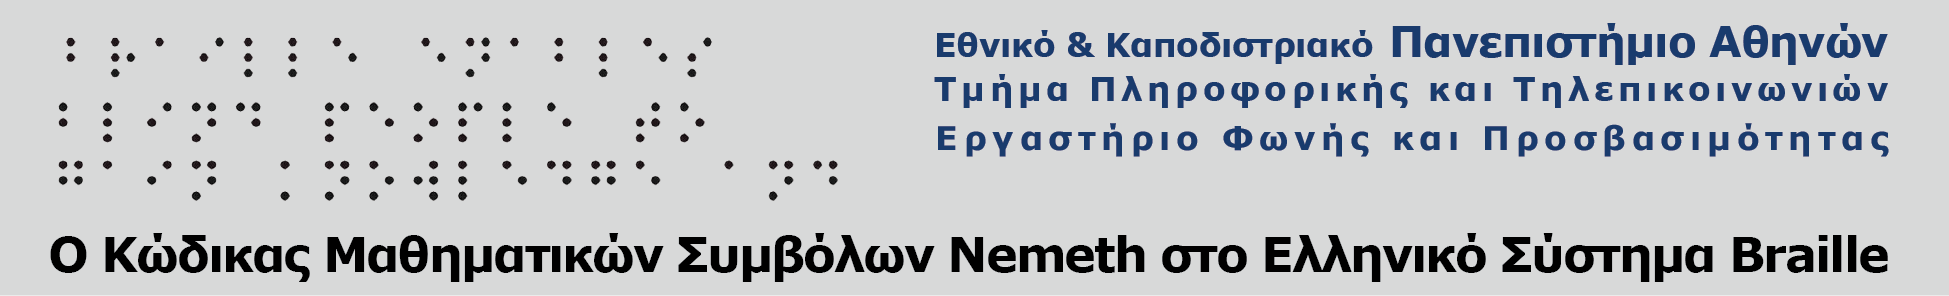 Ο κώδικας μαθηματικών συμβόλων Nemeth στο Ελληνικό σύστημα Braille